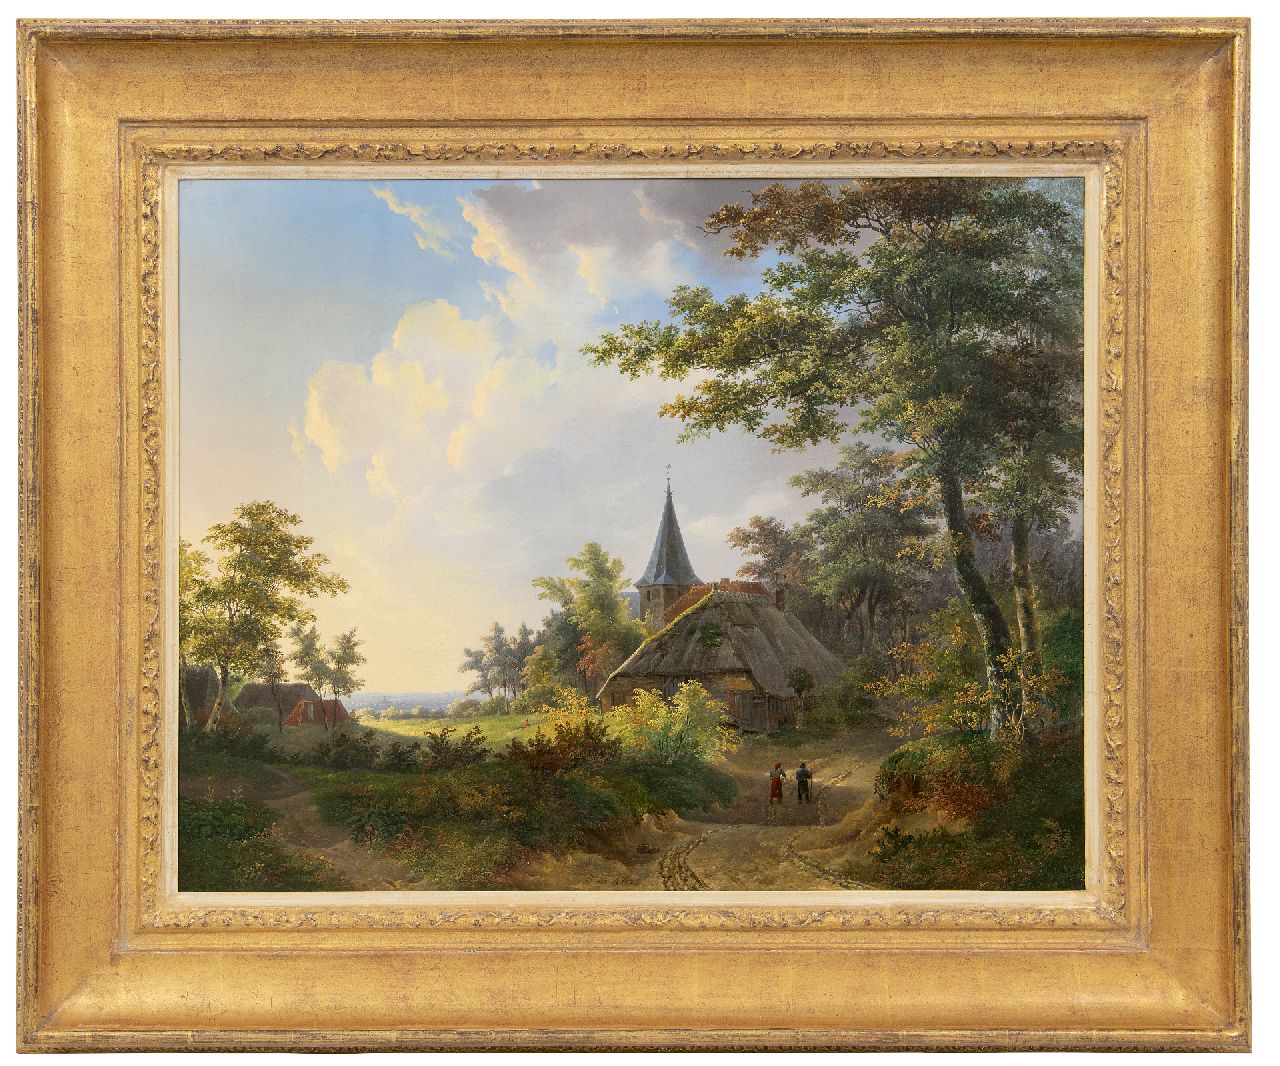 Klerk W. de | Willem de Klerk | Schilderijen te koop aangeboden | Landvolk op een bospad bij een kerkje, olieverf op doek 56,4 x 71,5 cm, gesigneerd middenonder